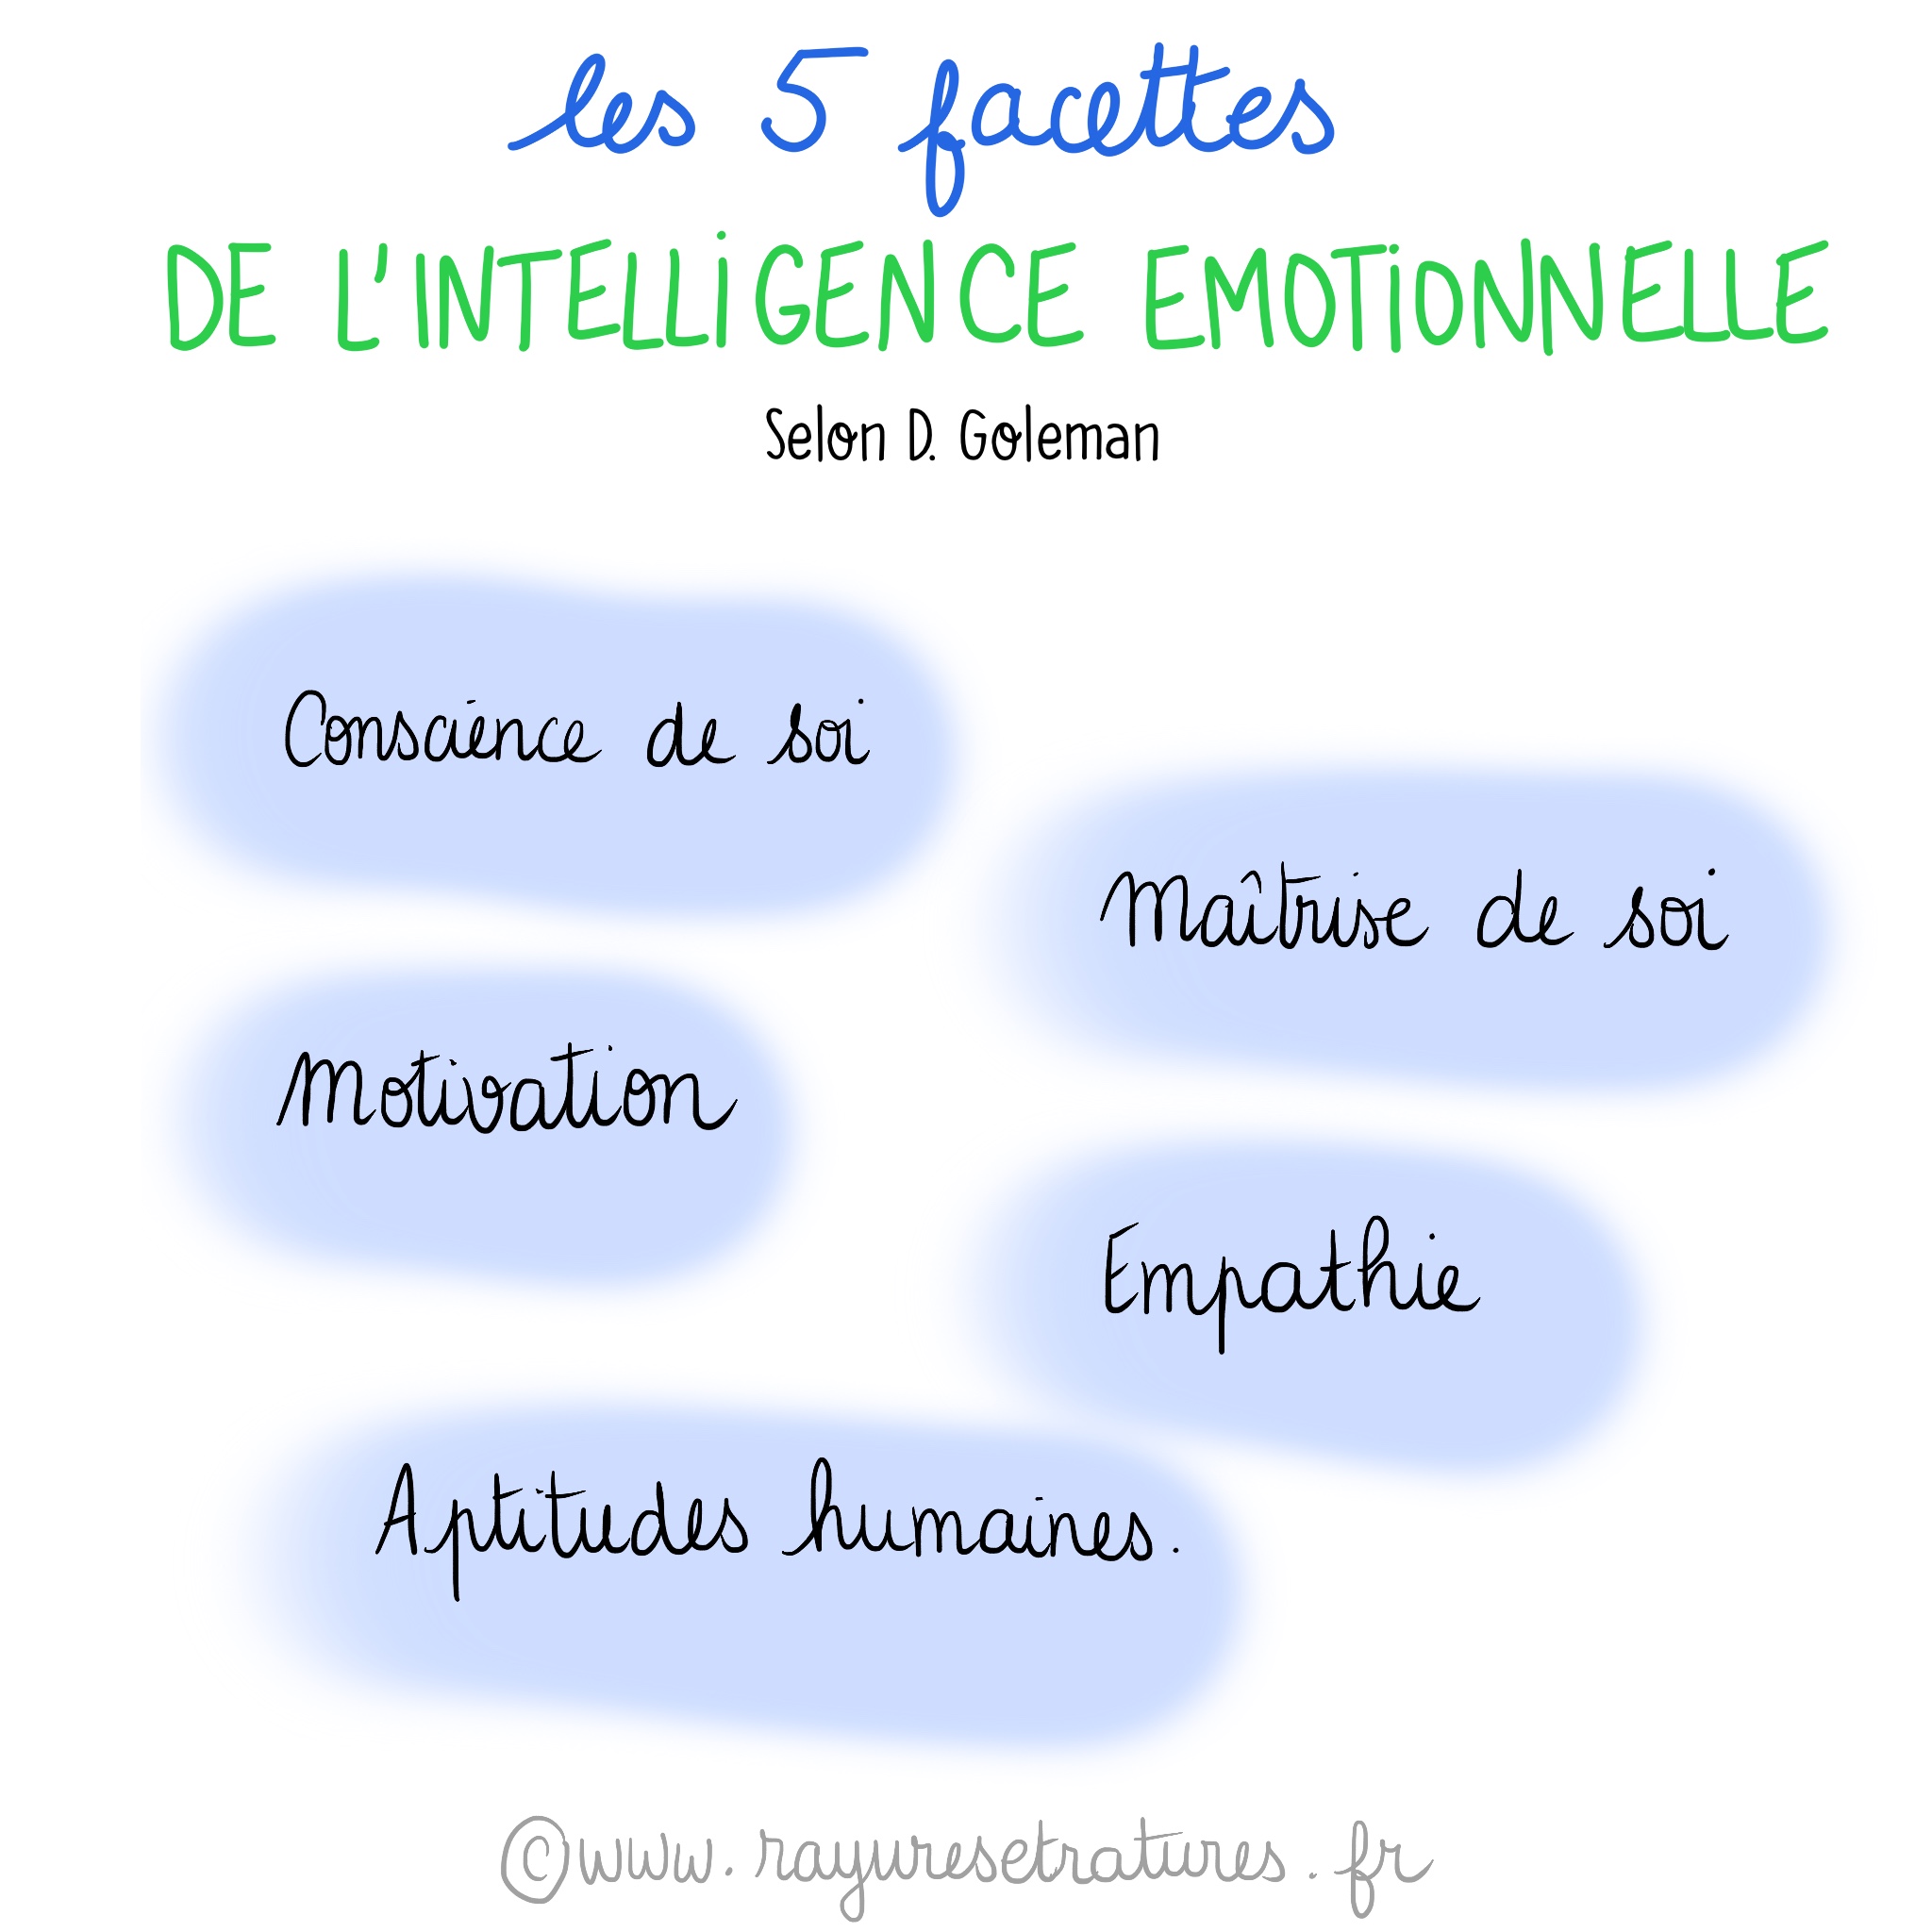 5 facettes de l'intelligence émotionnelle